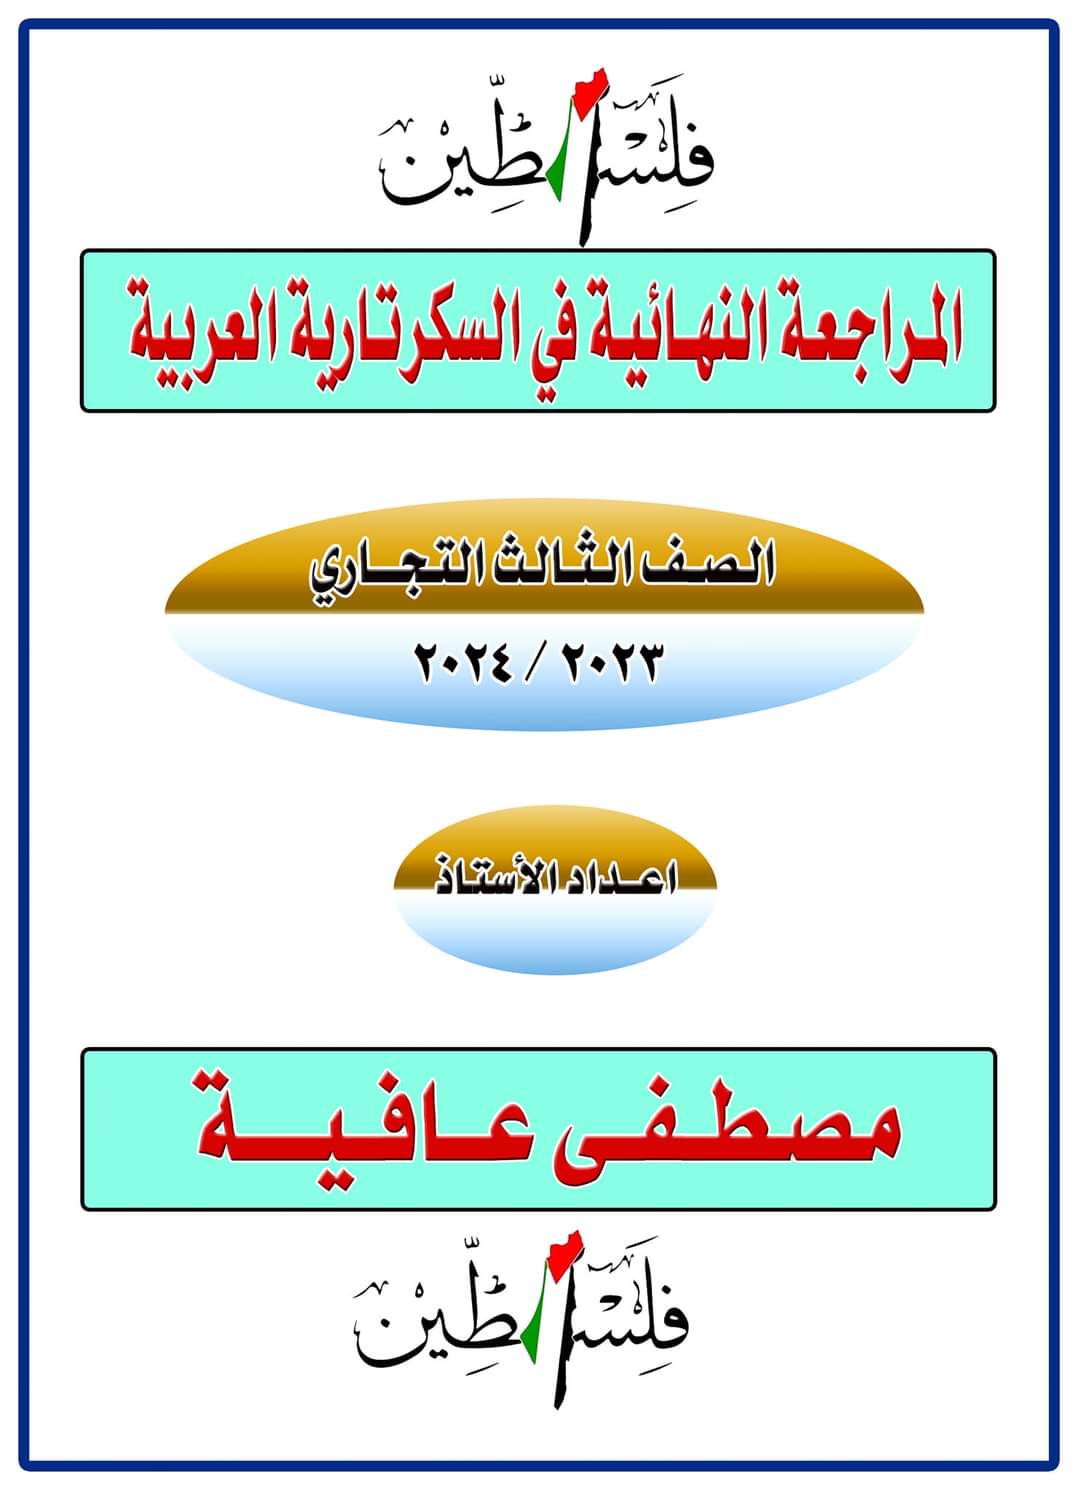 ملزمة المراجعة النهائية في مادة سكرتارية عربي للصف الثالث التجاري